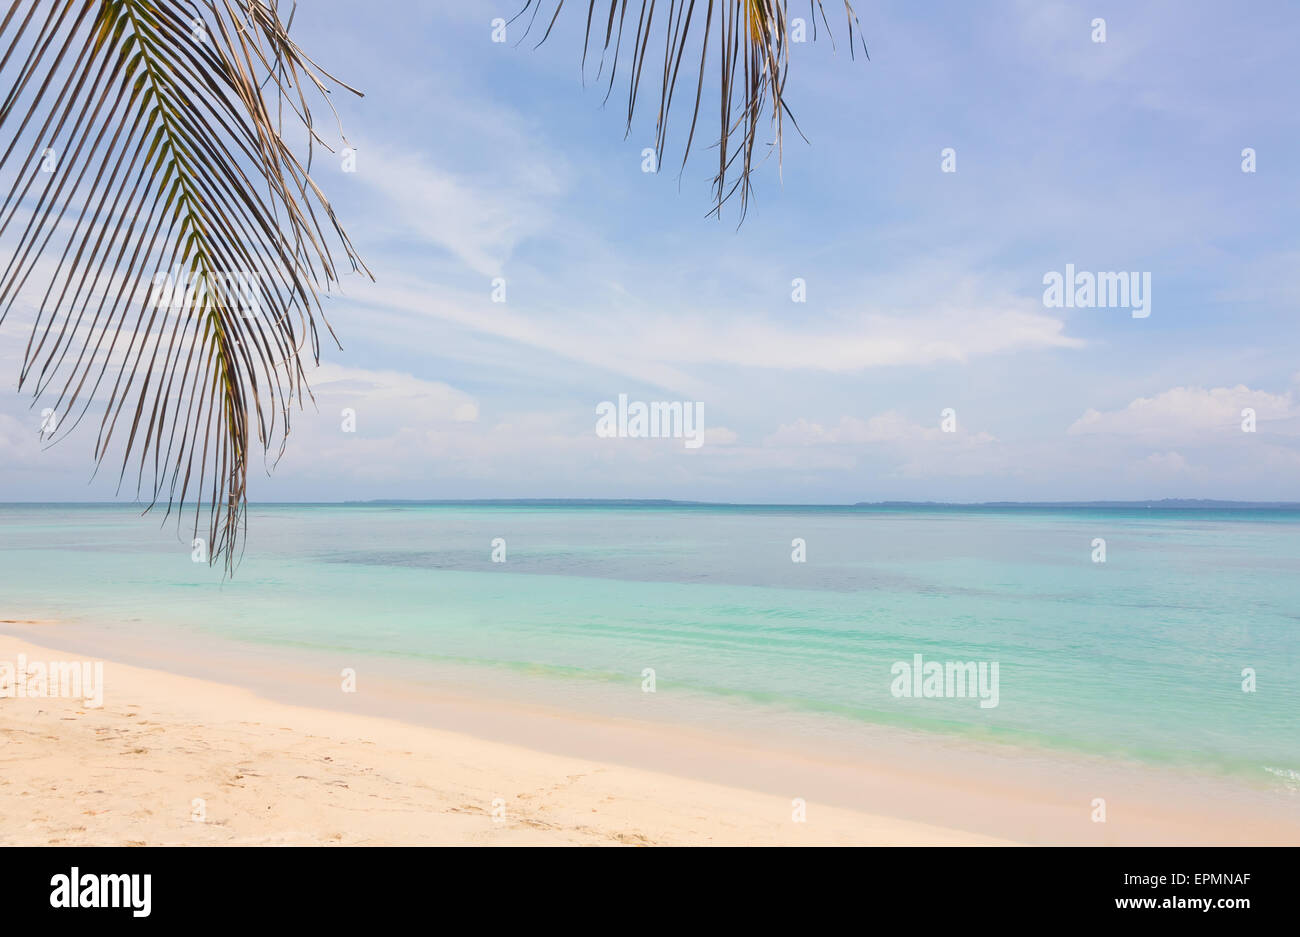 Beach on Zapatilla island, Bocas del Toro, Panama Stock Photo